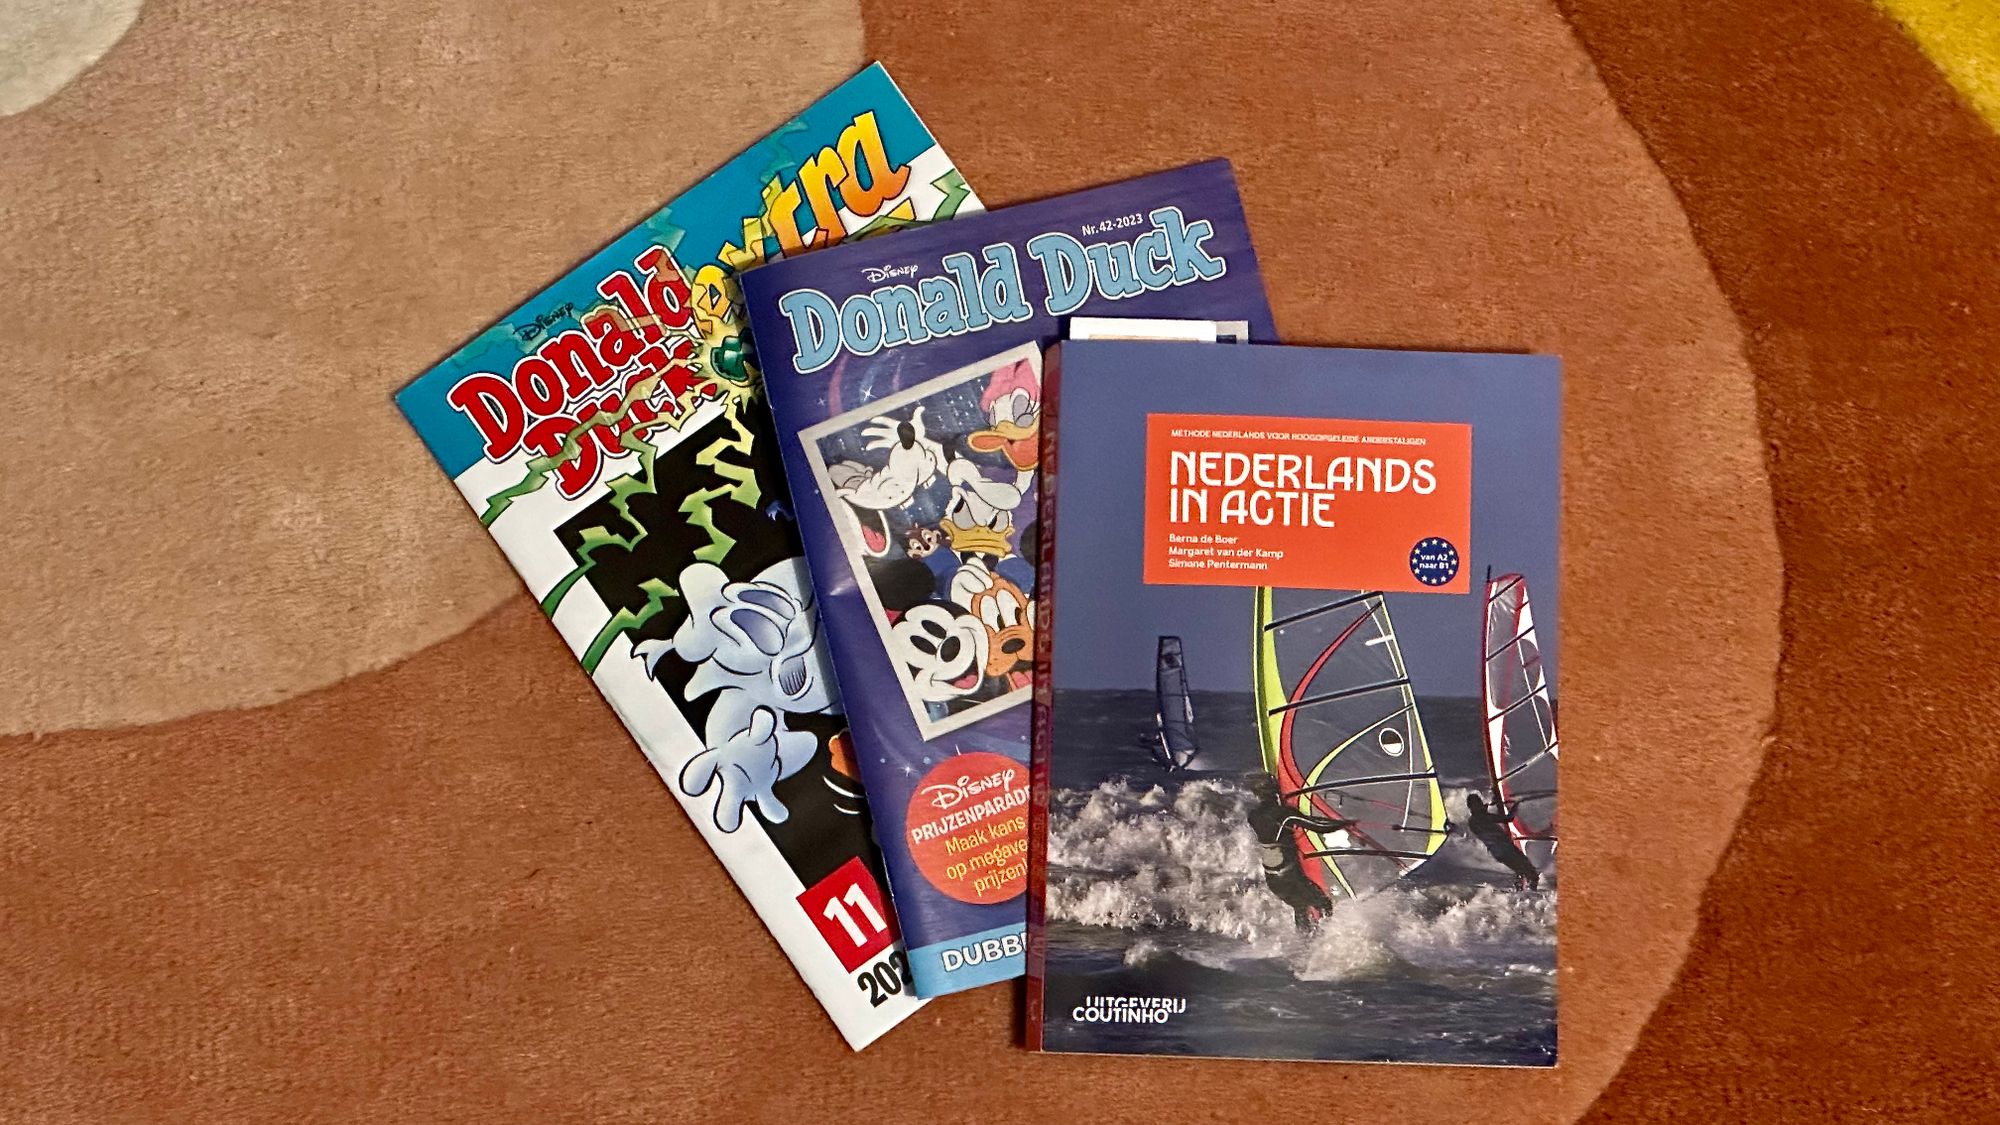 Comic Books and Dutch Book